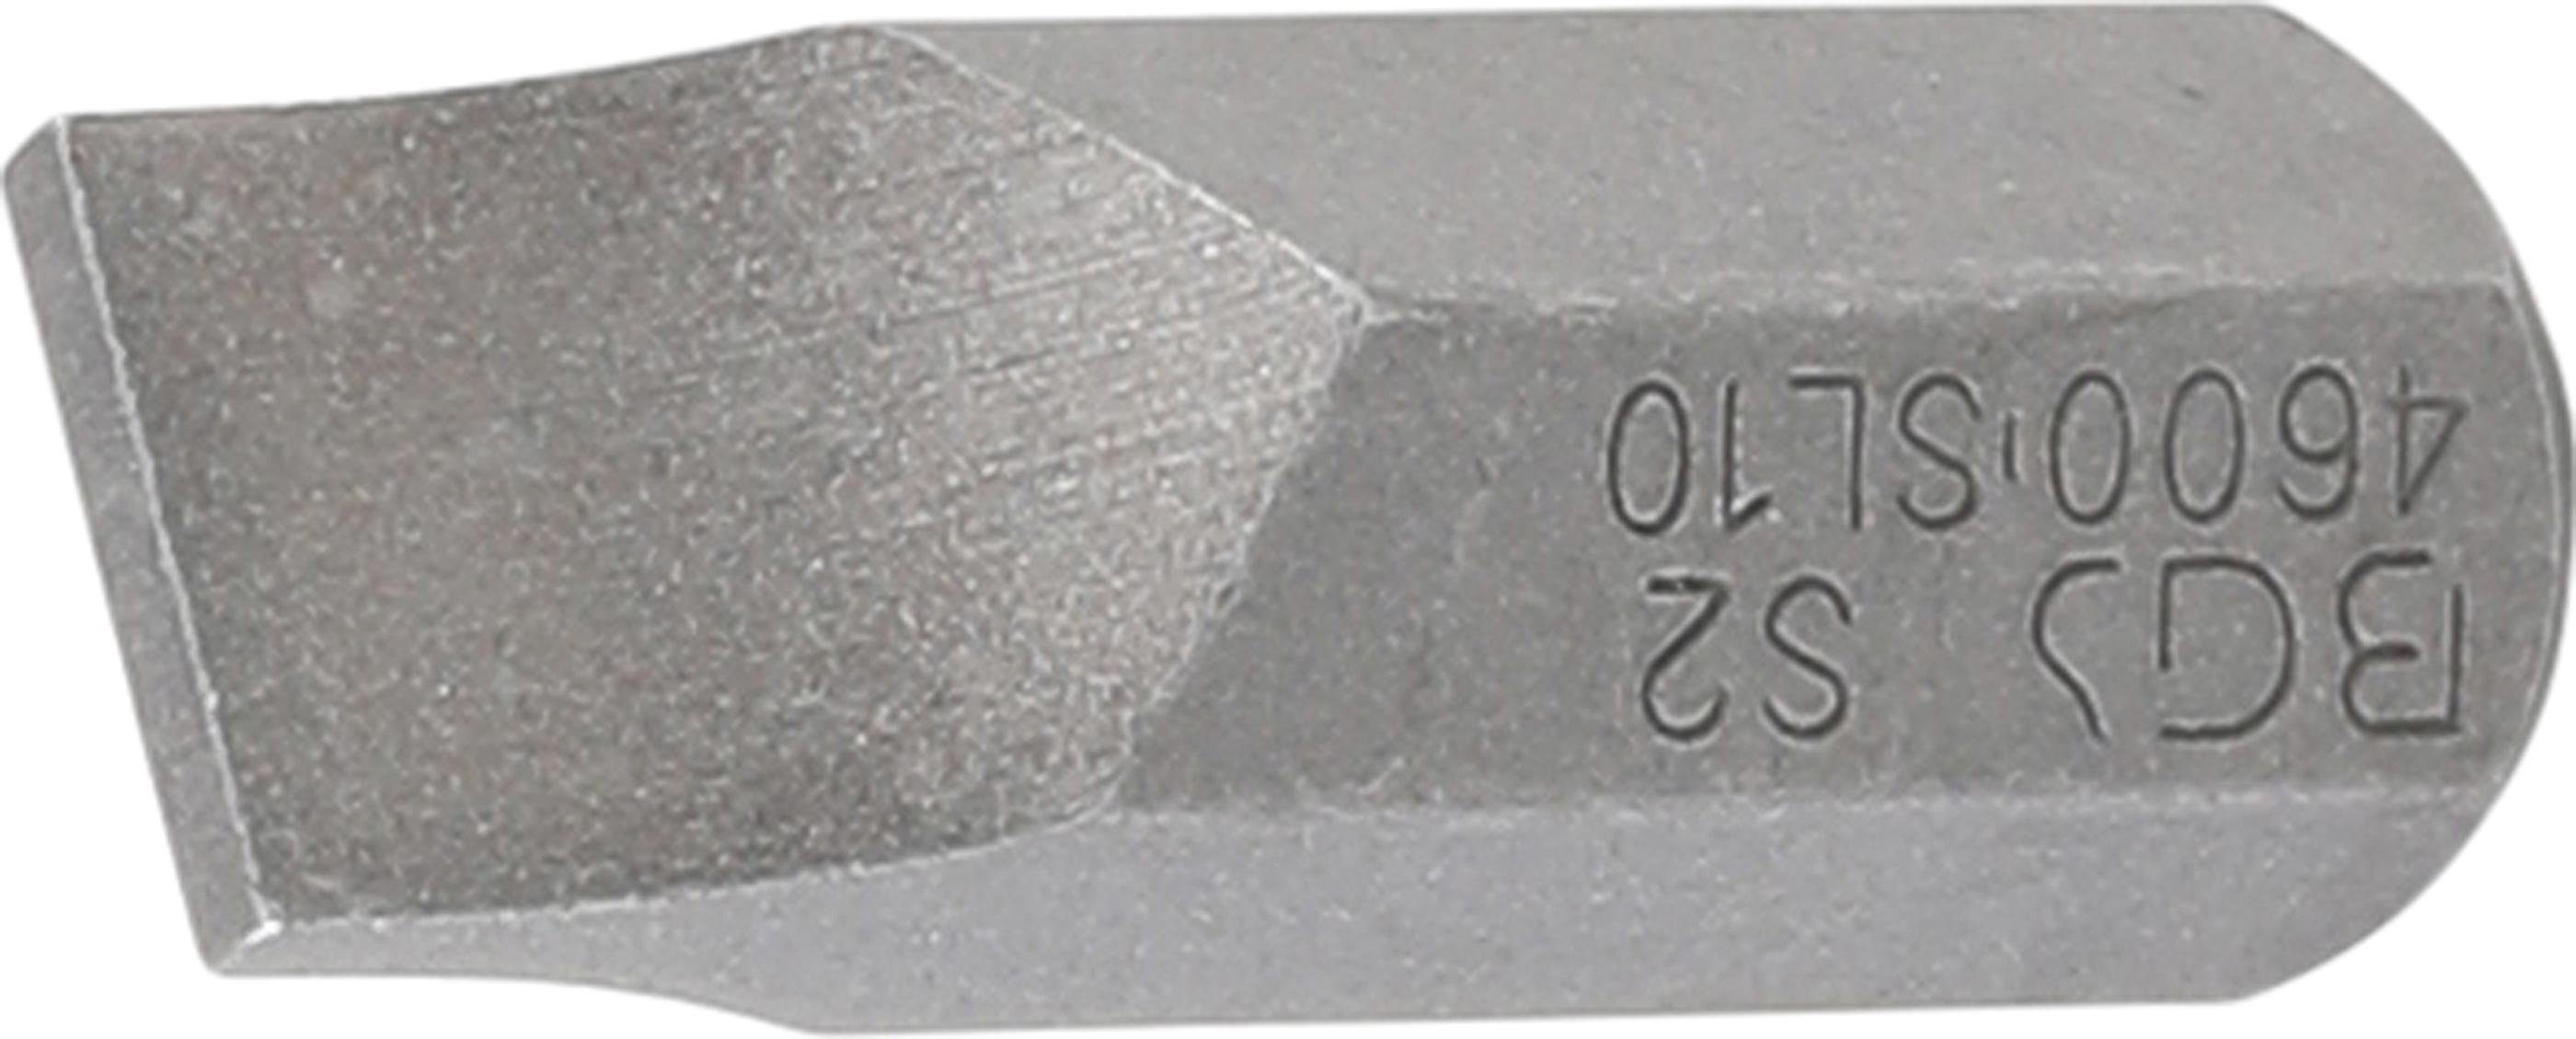 BGS technic Bit-Schraubendreher Bit, Antrieb Außensechskant 10 mm (3/8), Schlitz 10 mm